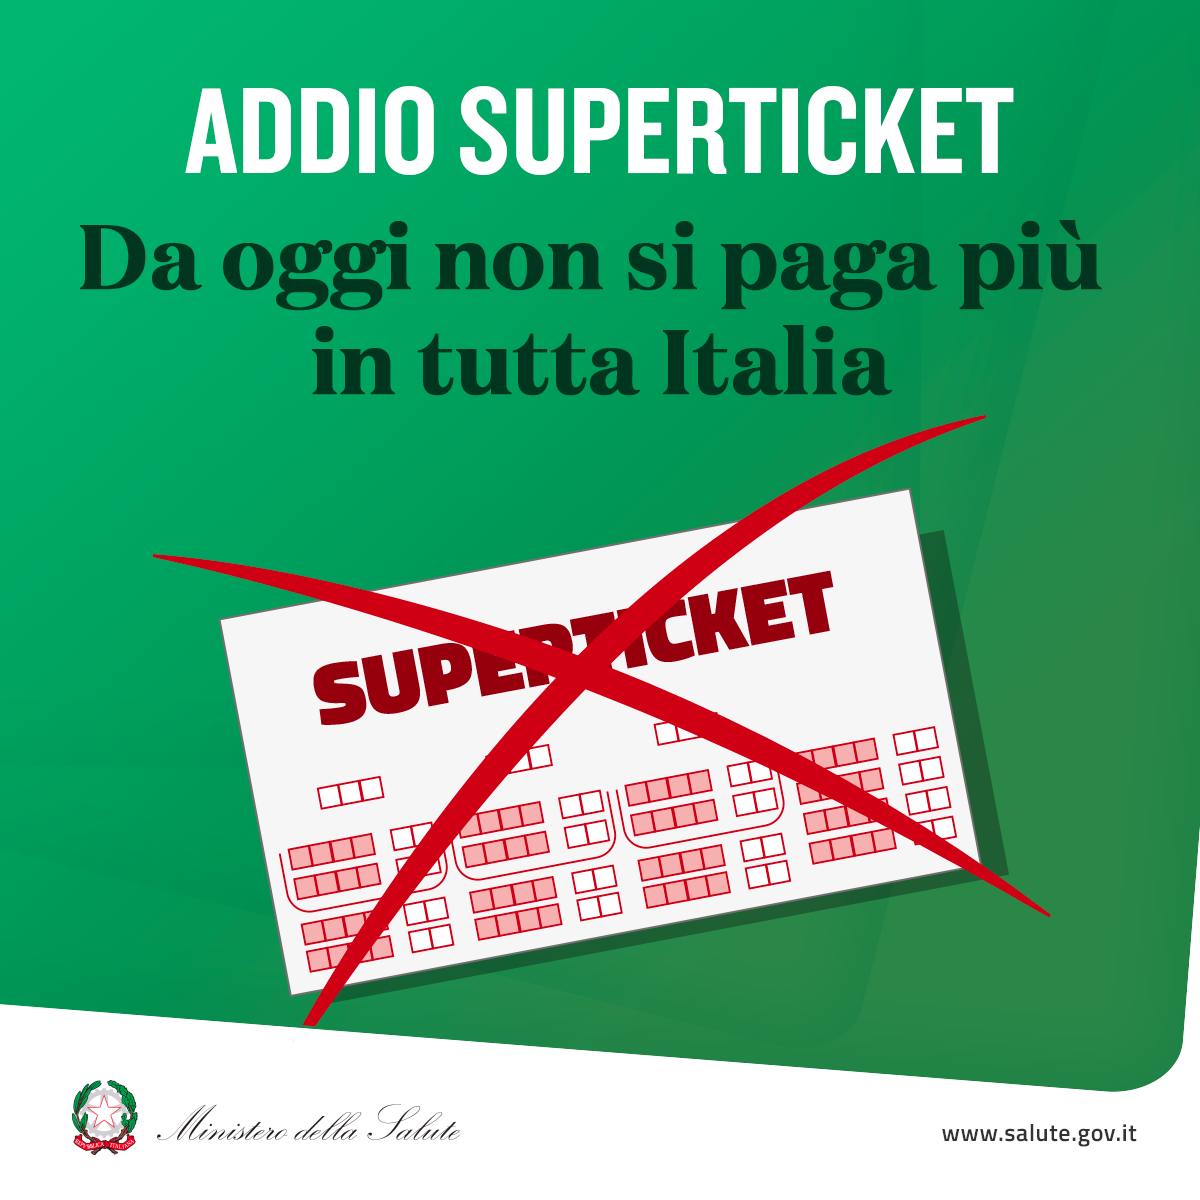 In Italia non si pagherà più il superticket per le visite specialistiche